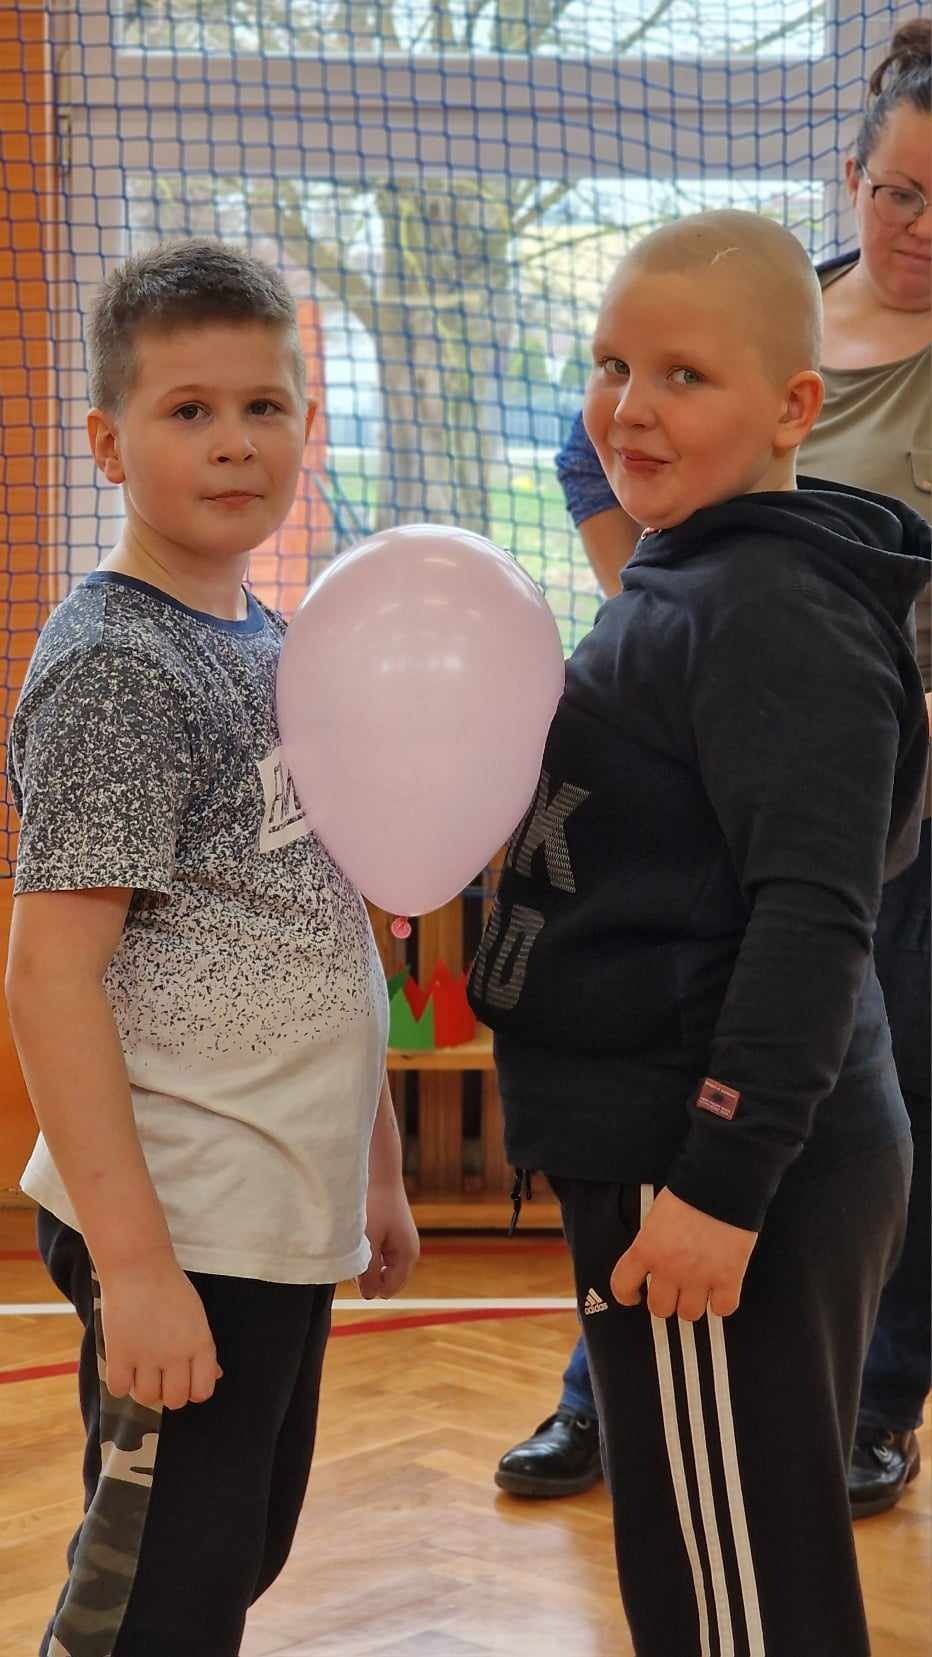 2 chłopców przemieszcza się wzdłuż sali z balonem, który tkwi miedzy ich brzuchami